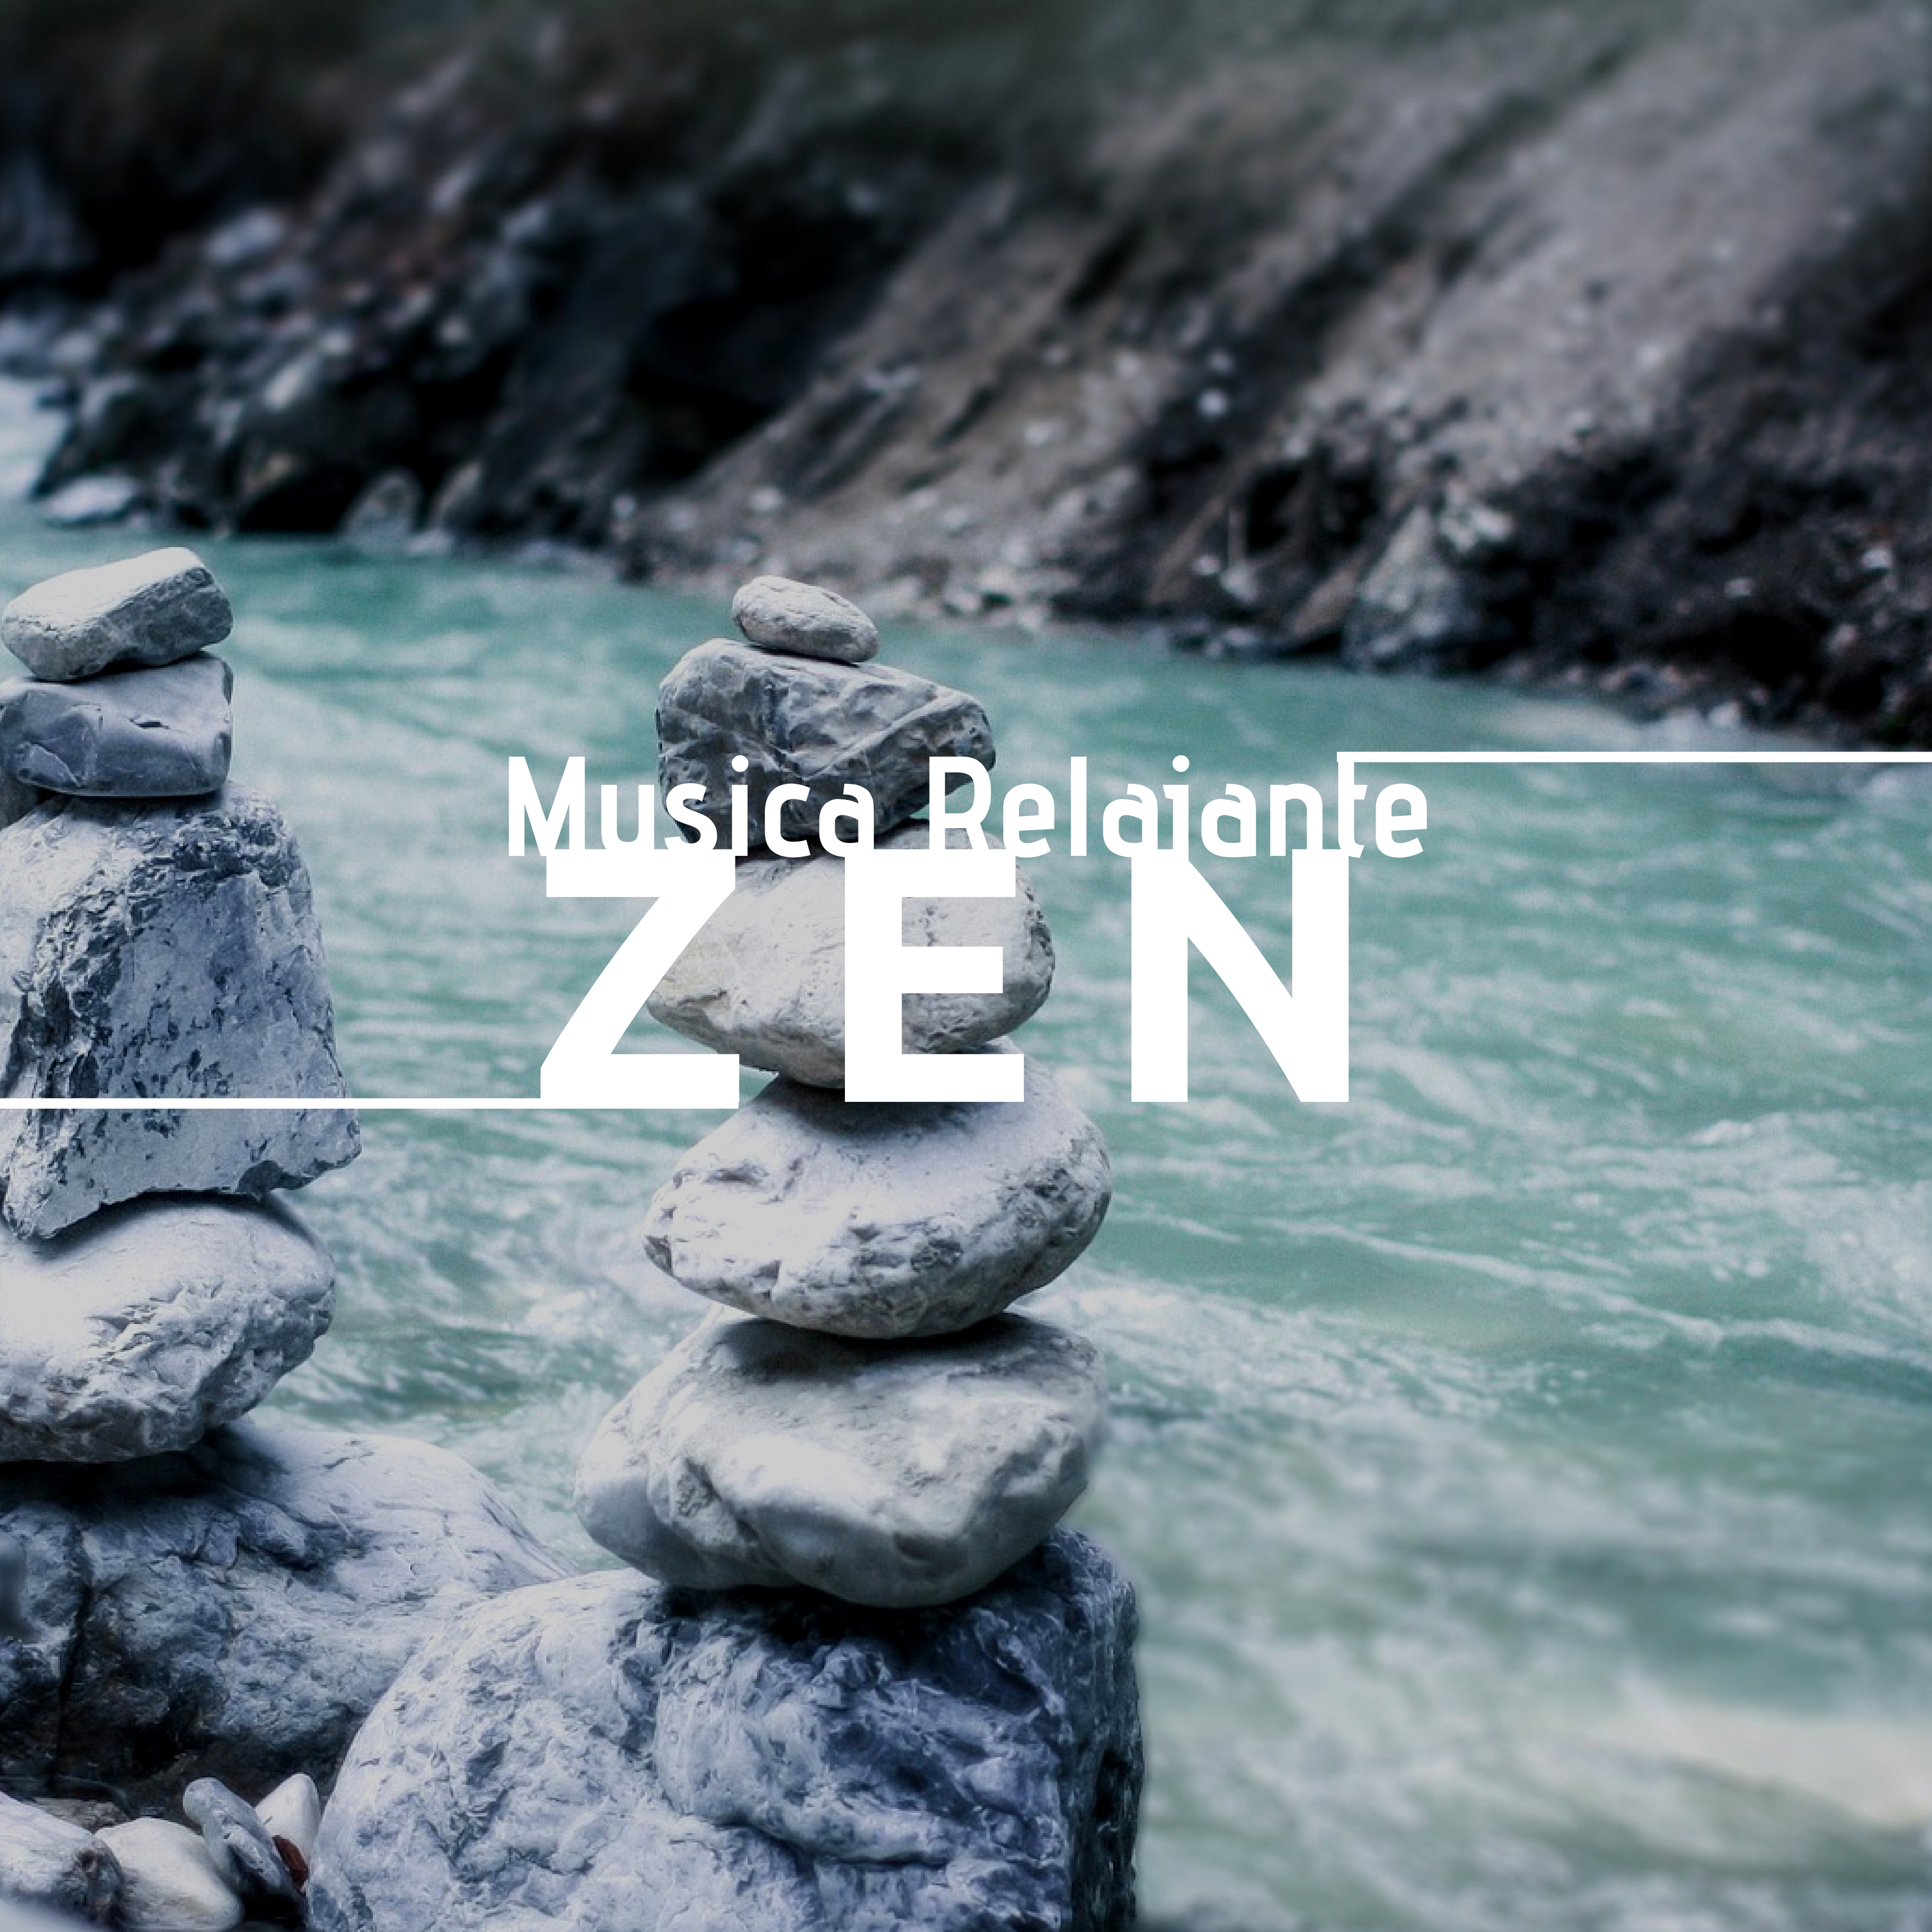 Musica Relajante Zen - Musica de Relajacion y Meditacion